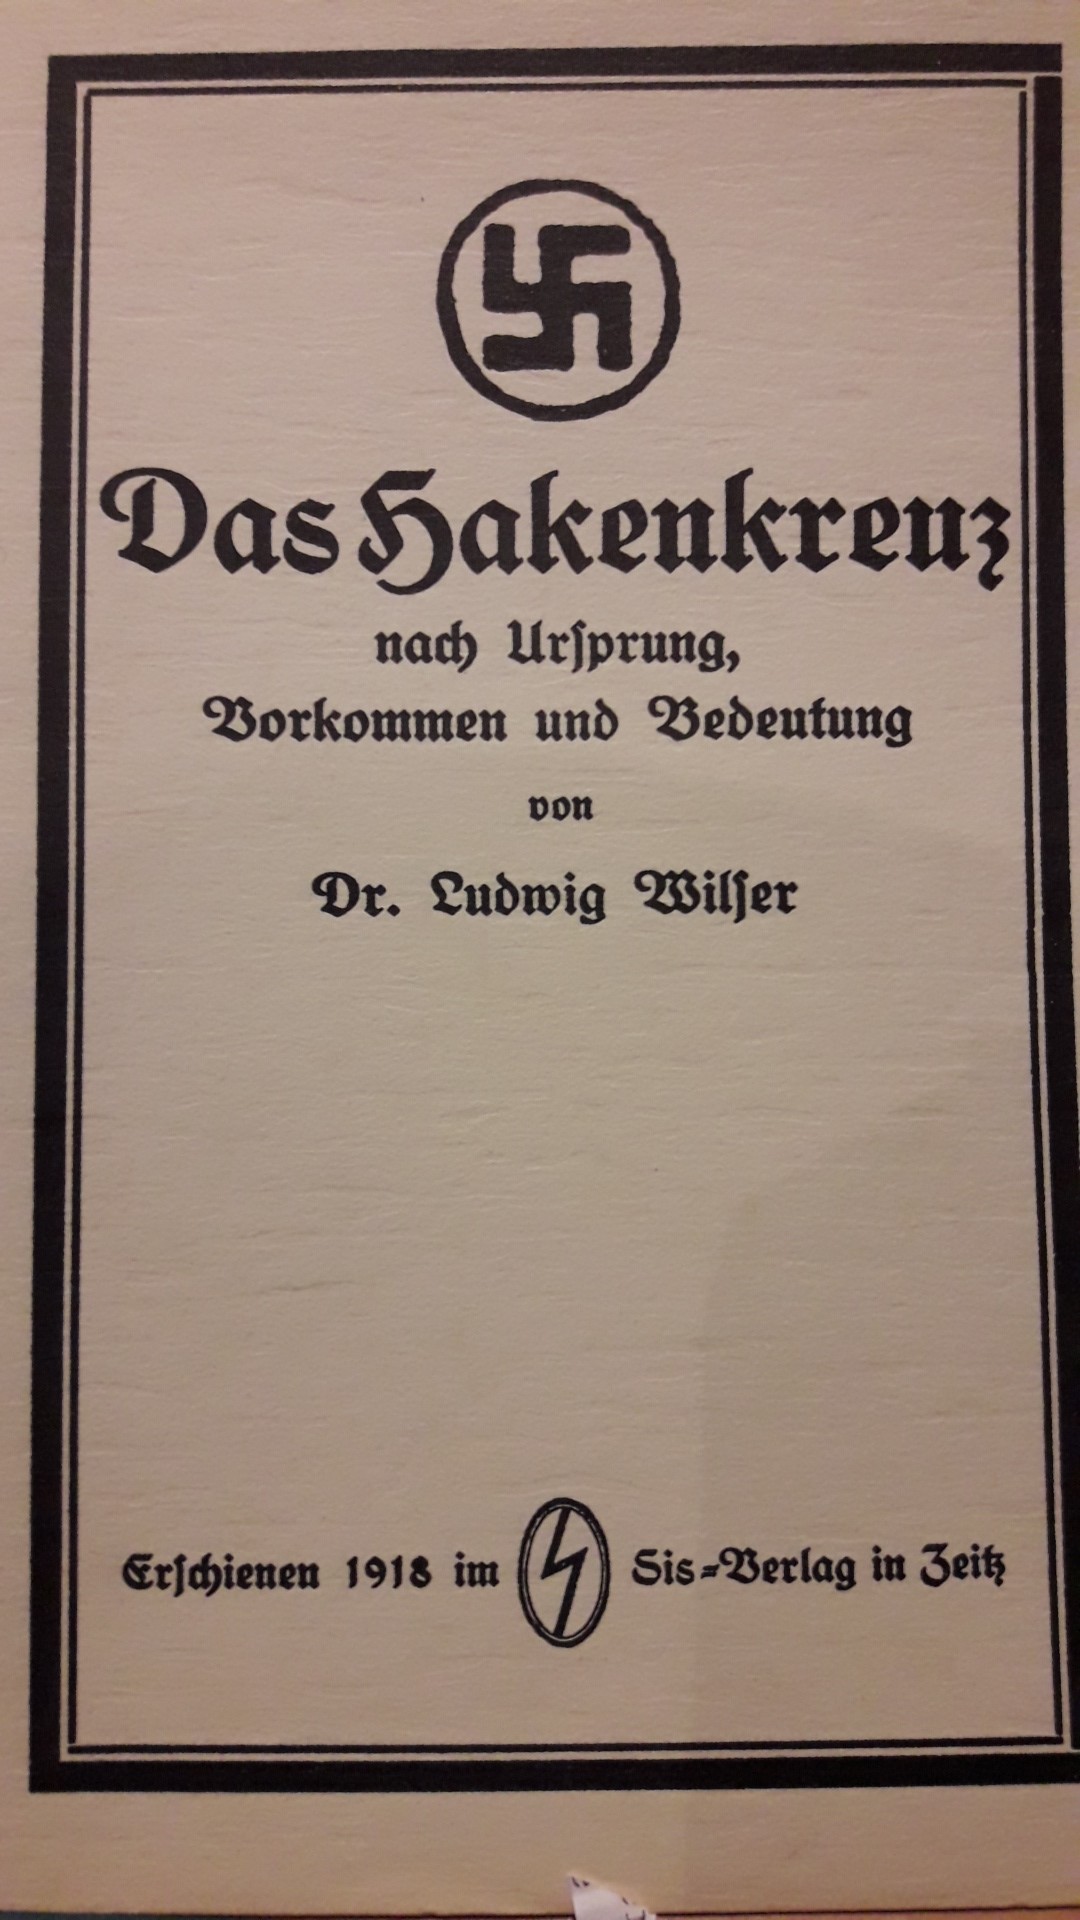 Brochure : Das Gakenkreuz nach urpsung , vorkommen und bedeutung 1918 / faksimilr uitgave